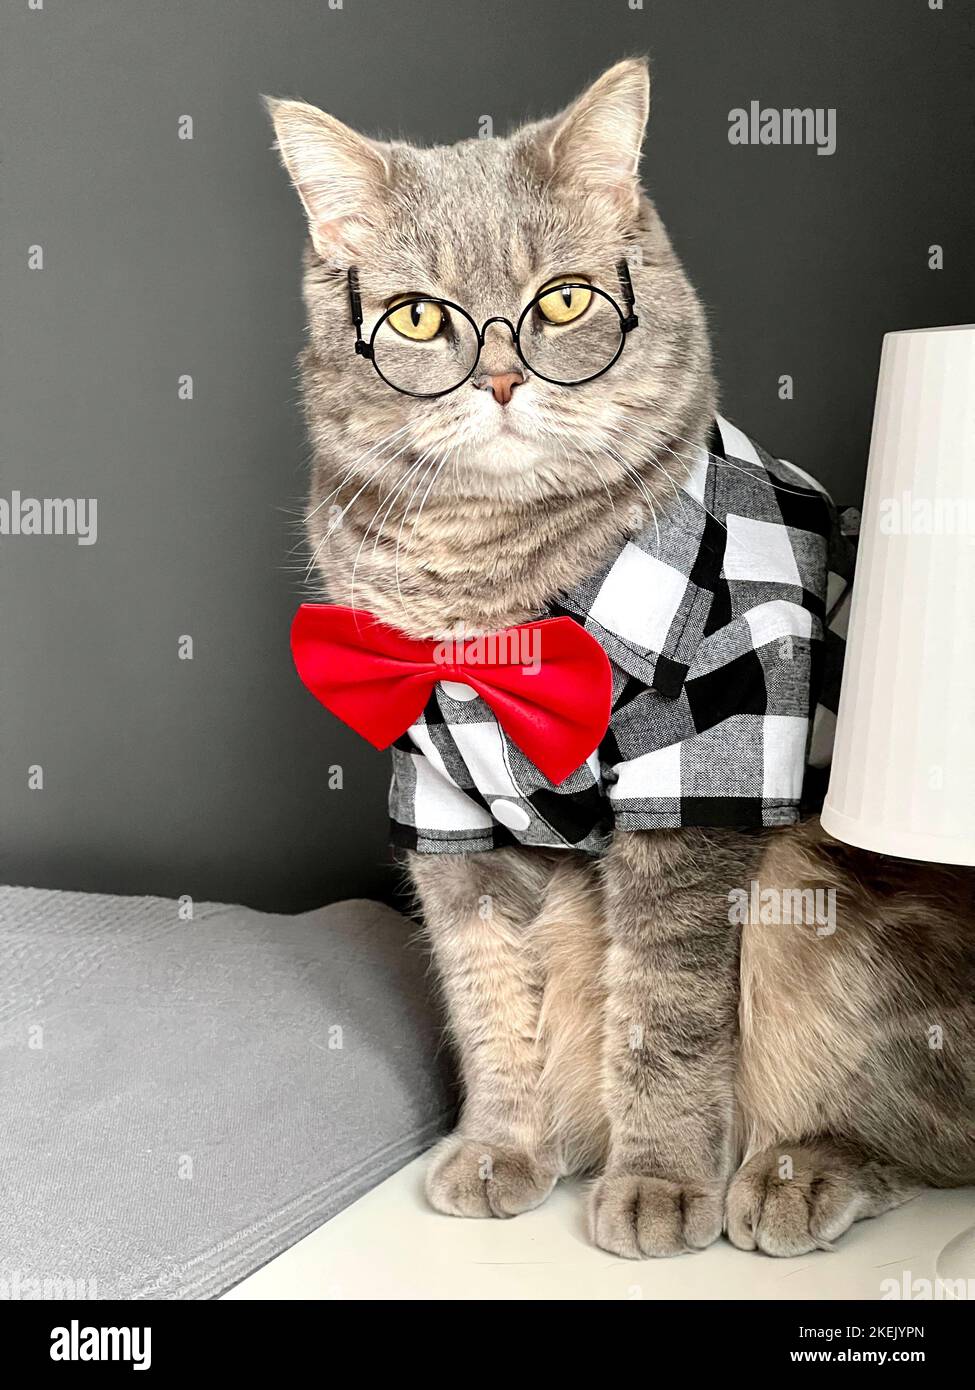 Un gatto grigio scozzese dalle orecchie dritte con occhiali, una camicia bianca nera e una cravatta rossa in vacanza sembra un Signore. PET in un appartamento moderno e accogliente Foto Stock